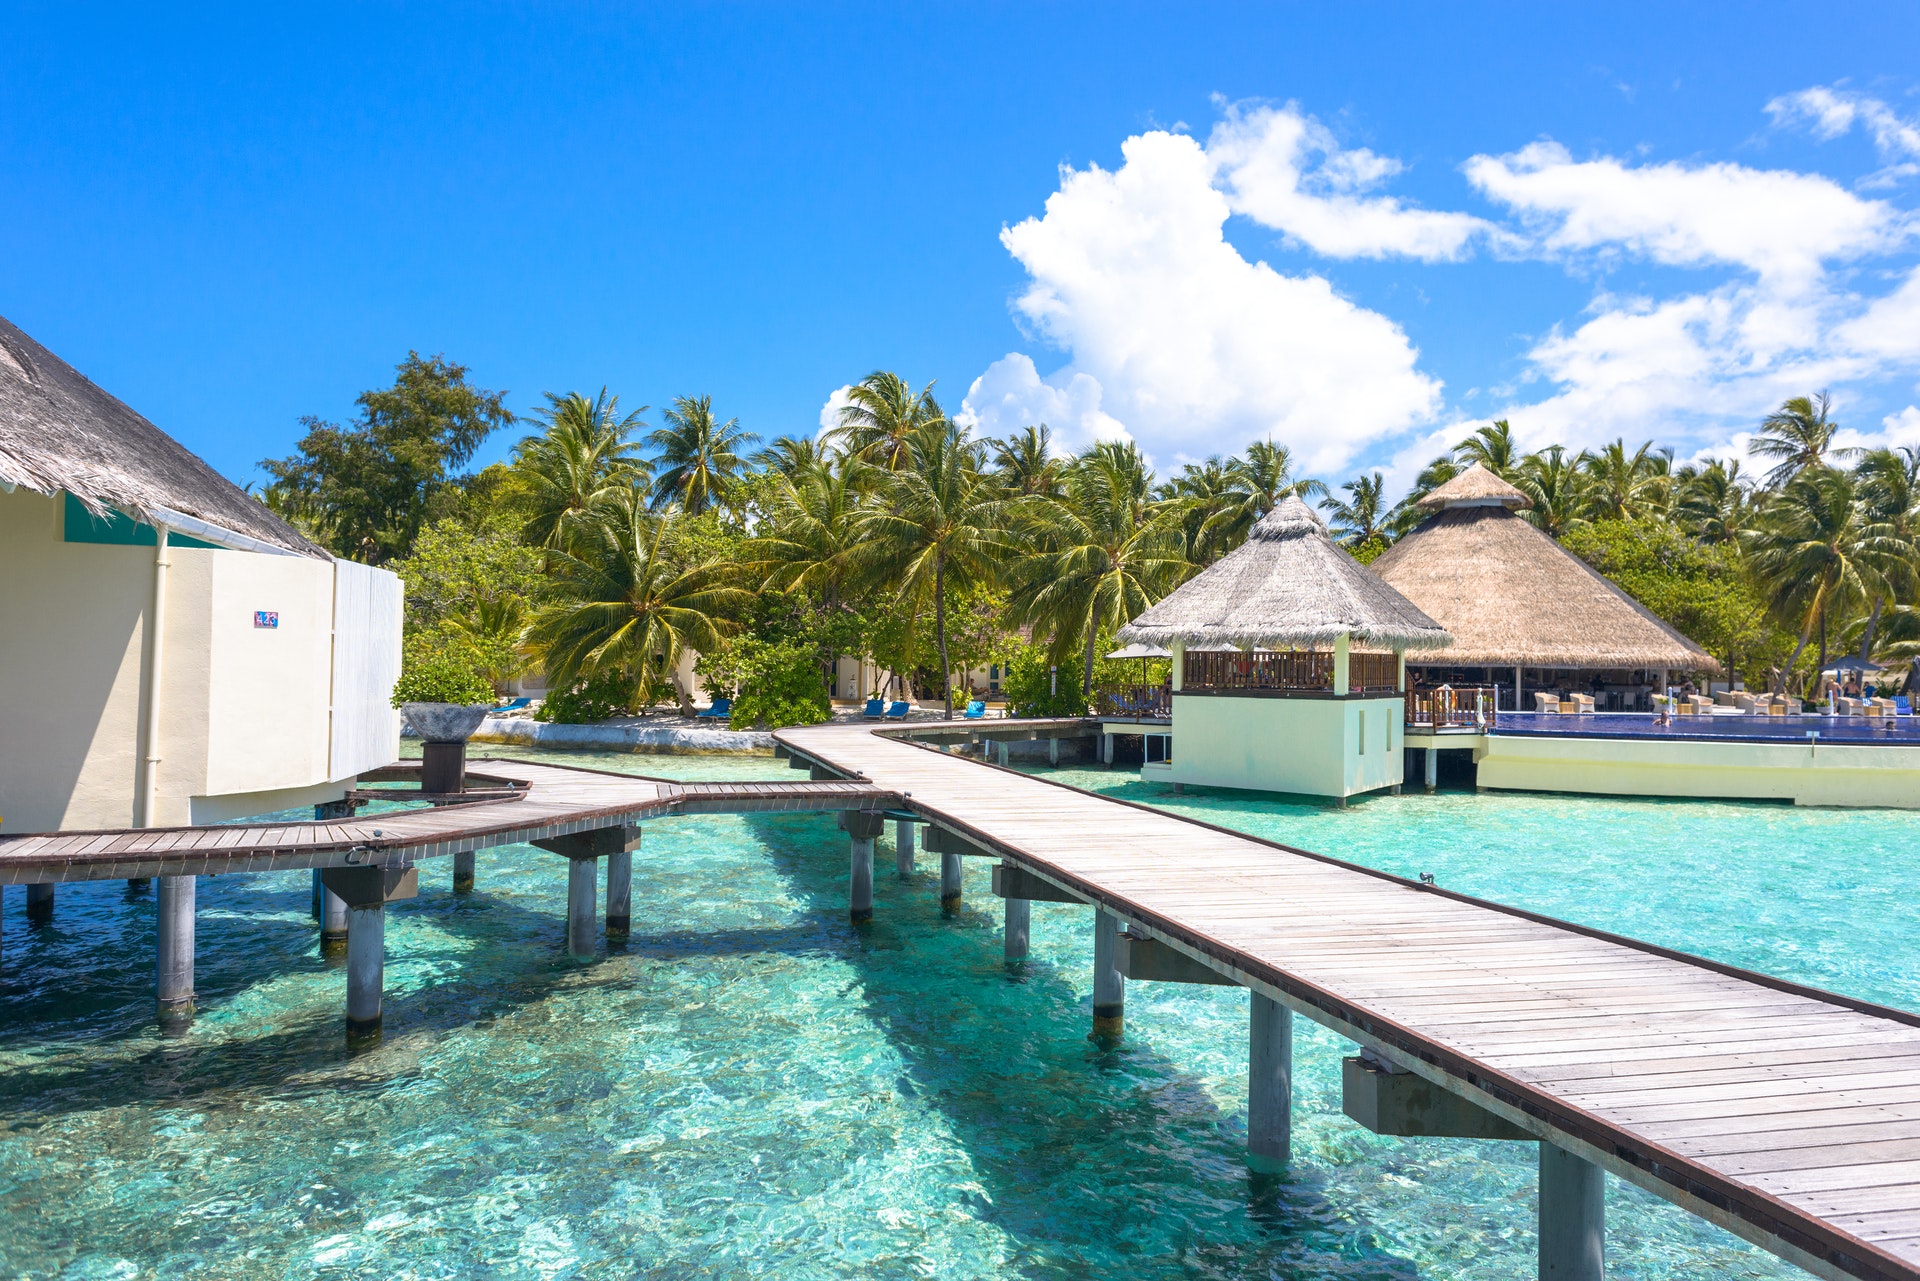 السياحة في جزر المالديف